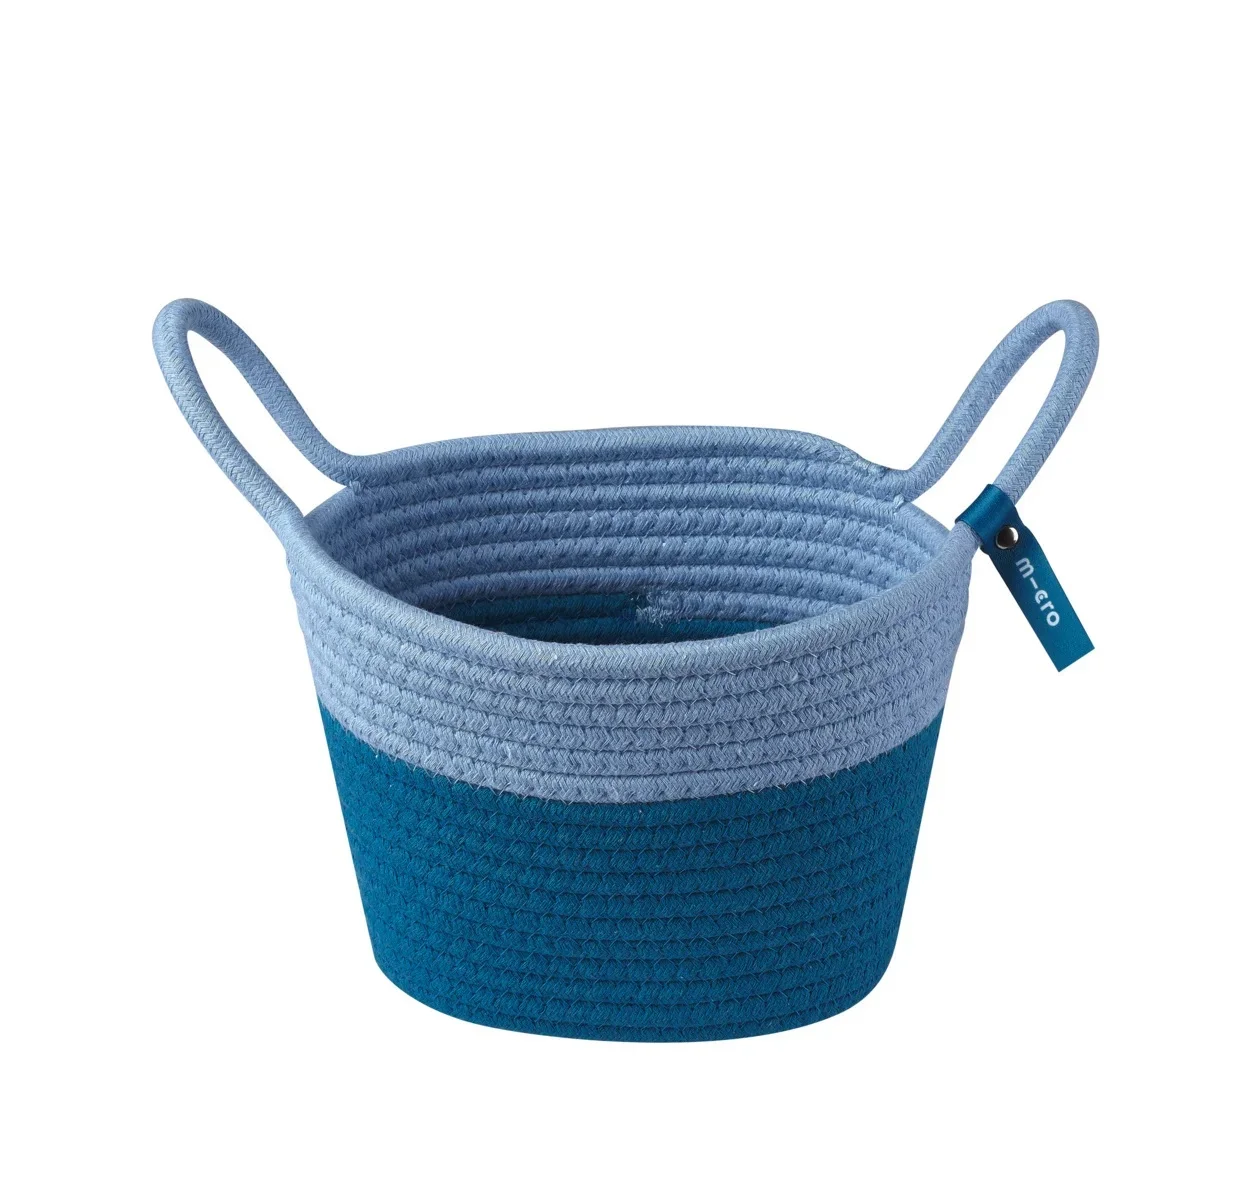 Basket Blue - Step Accessoire